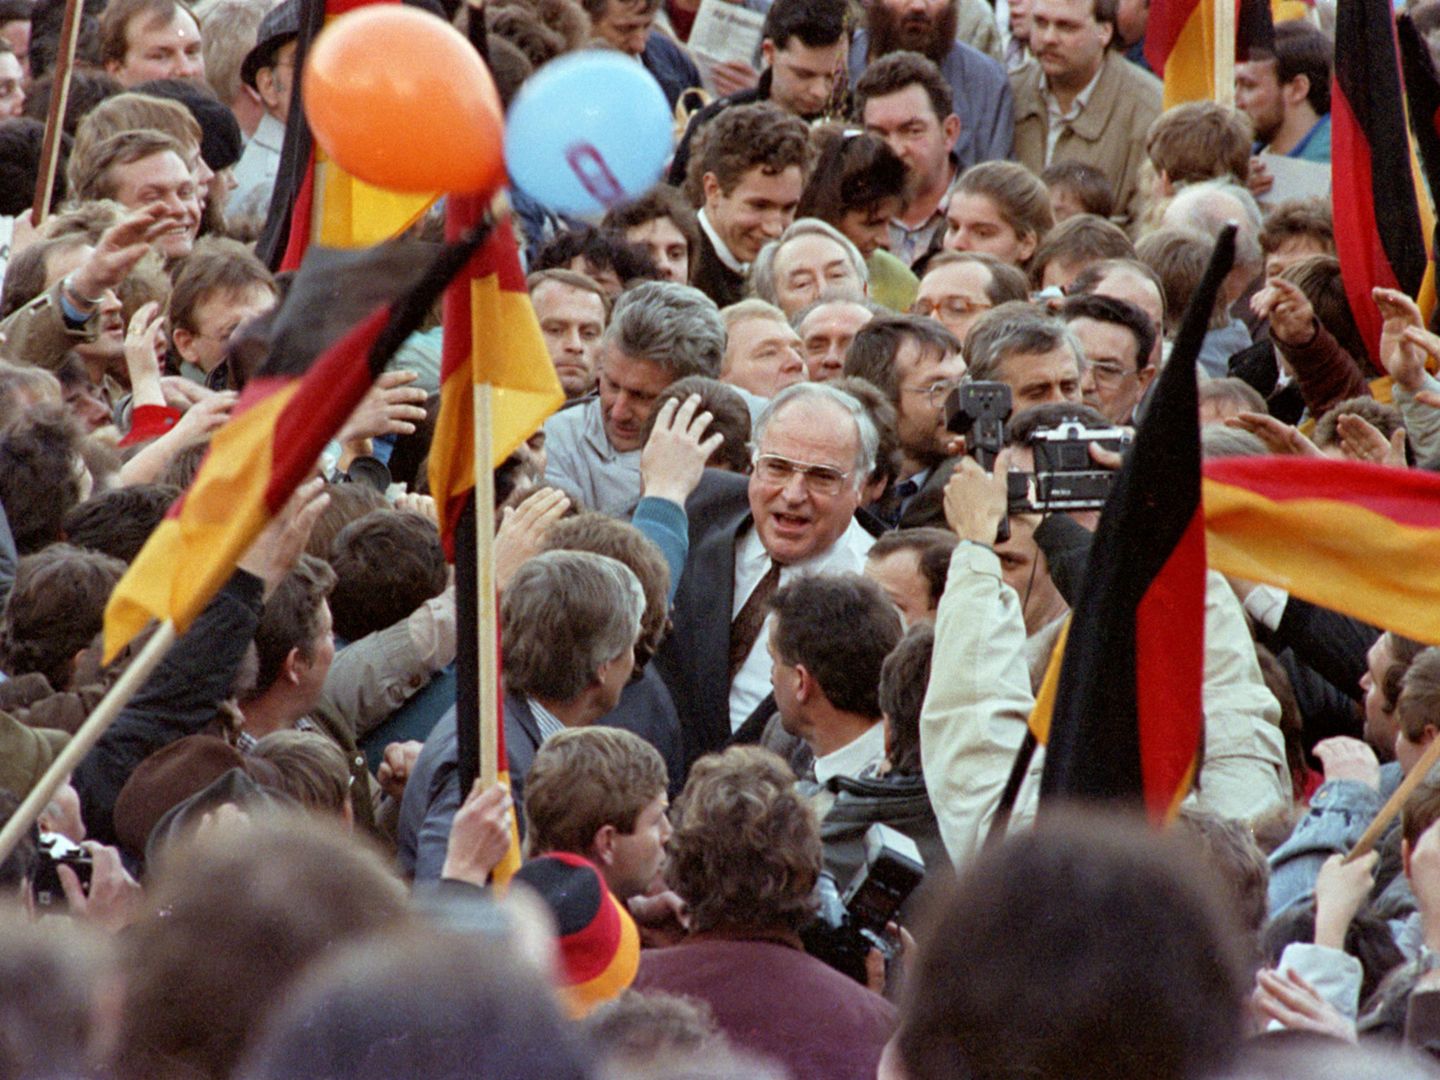 Kohl entre una multitud de simpatizantes durante un evento de campaña en Erfurt. (Reuters)